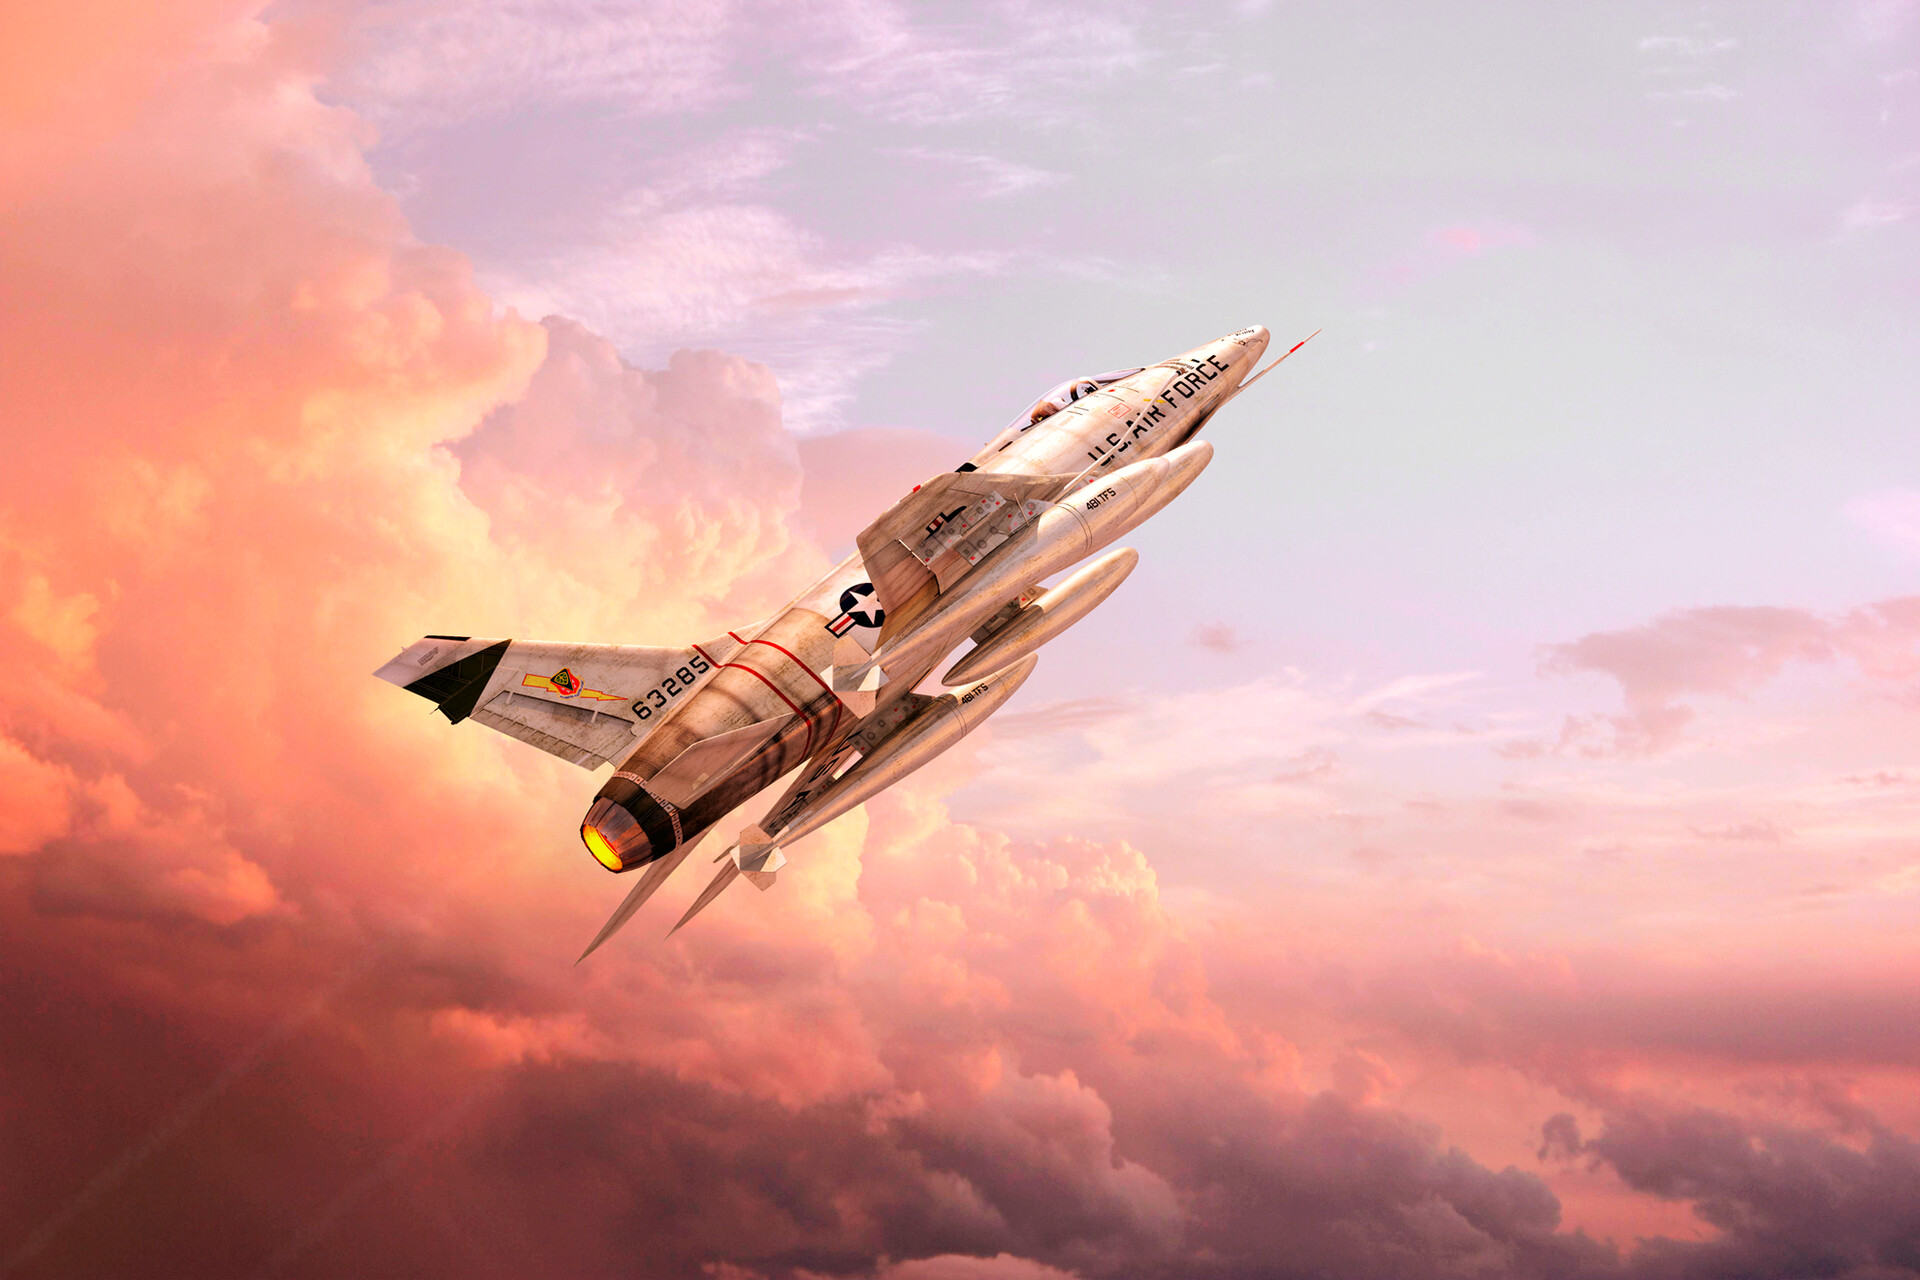 Скачать обои бесплатно Небо, Реактивный Истребитель, Военные, Североамериканский F 100 Супер Сейбр, Реактивные Истребители картинка на рабочий стол ПК